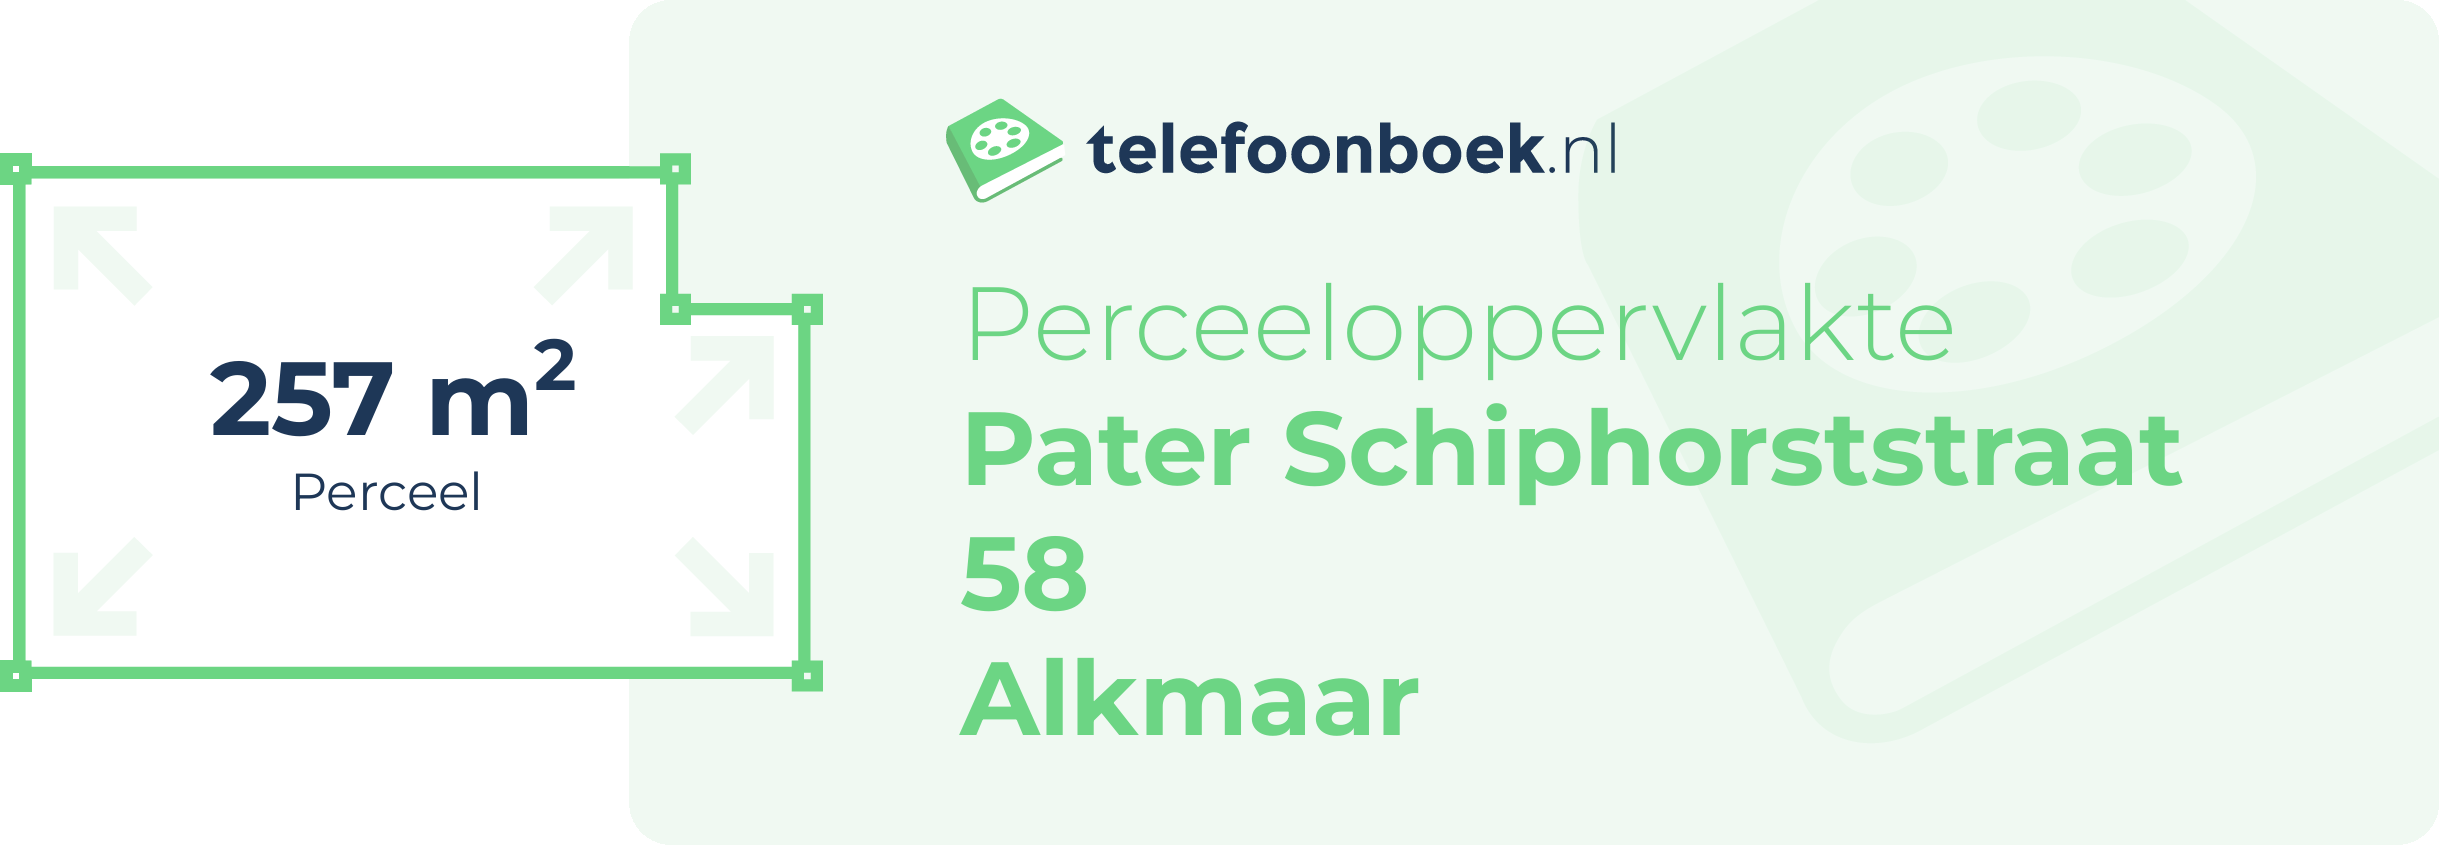 Perceeloppervlakte Pater Schiphorststraat 58 Alkmaar